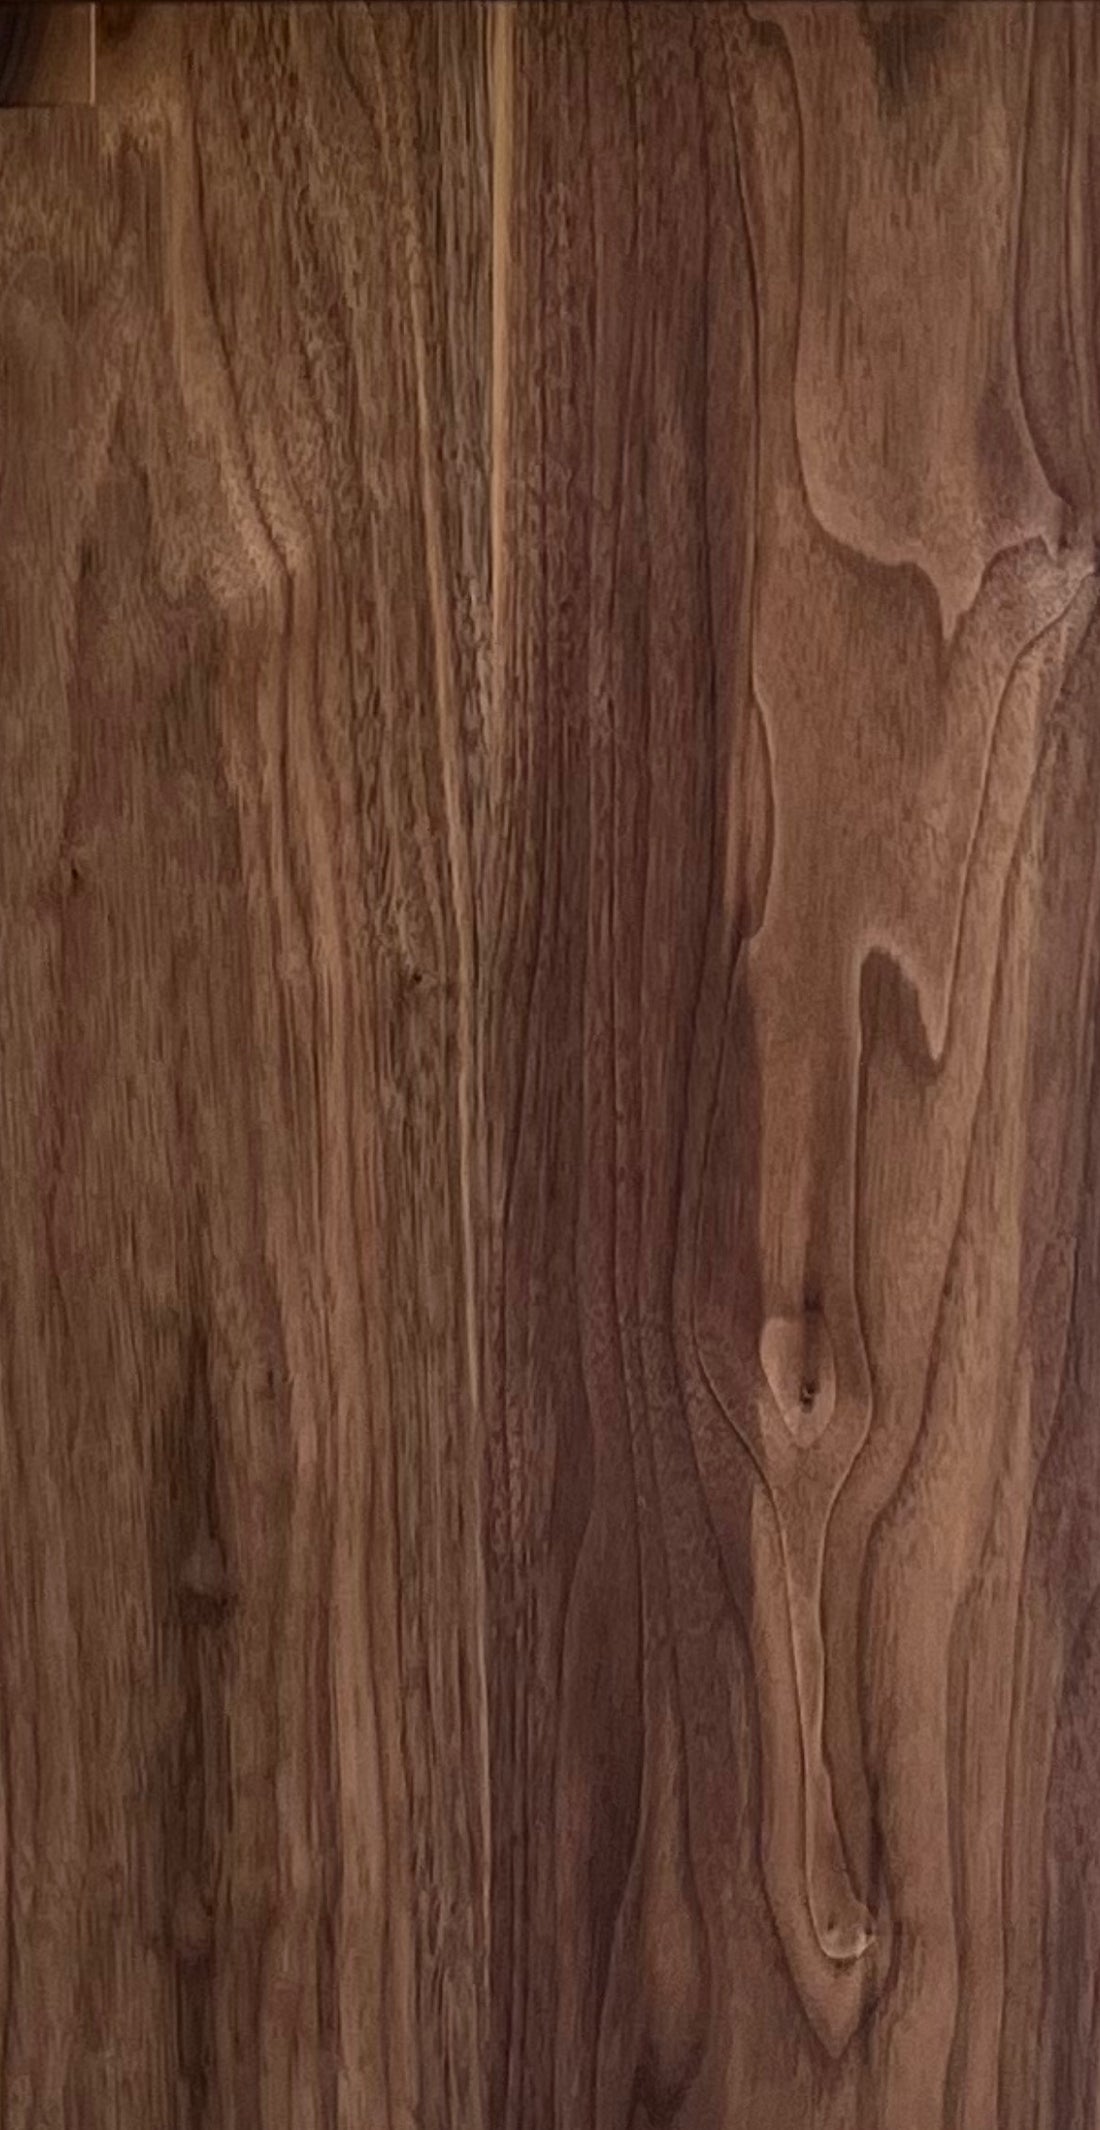 Walnut Timber